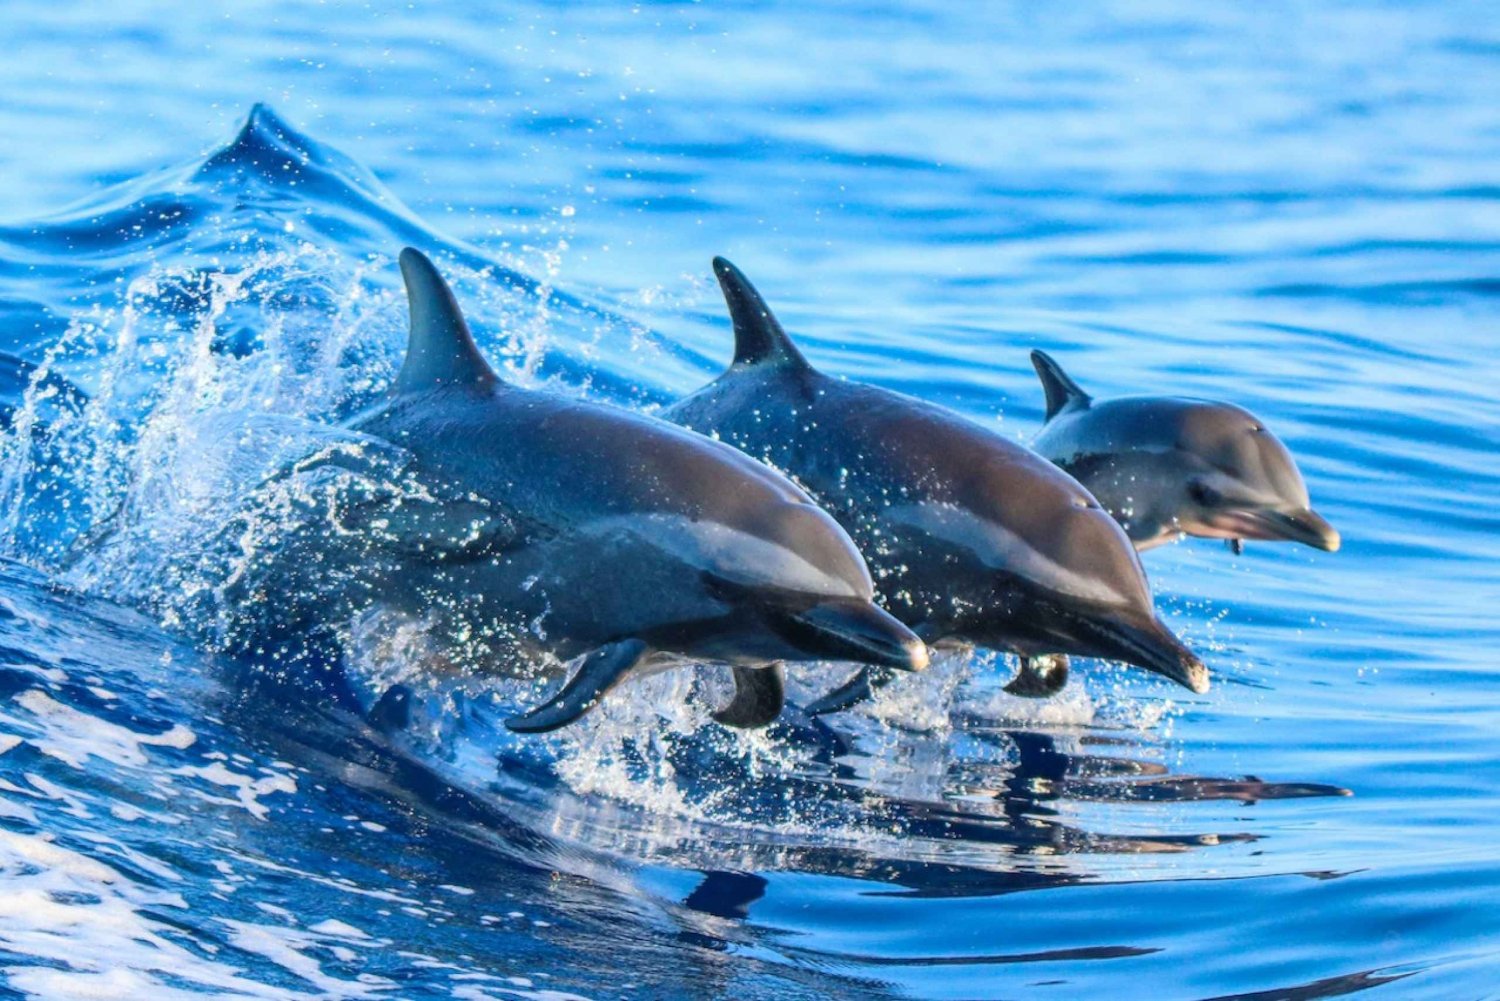 Experiência guiada de observação de golfinhos e mergulho com snorkel na Costa Rica